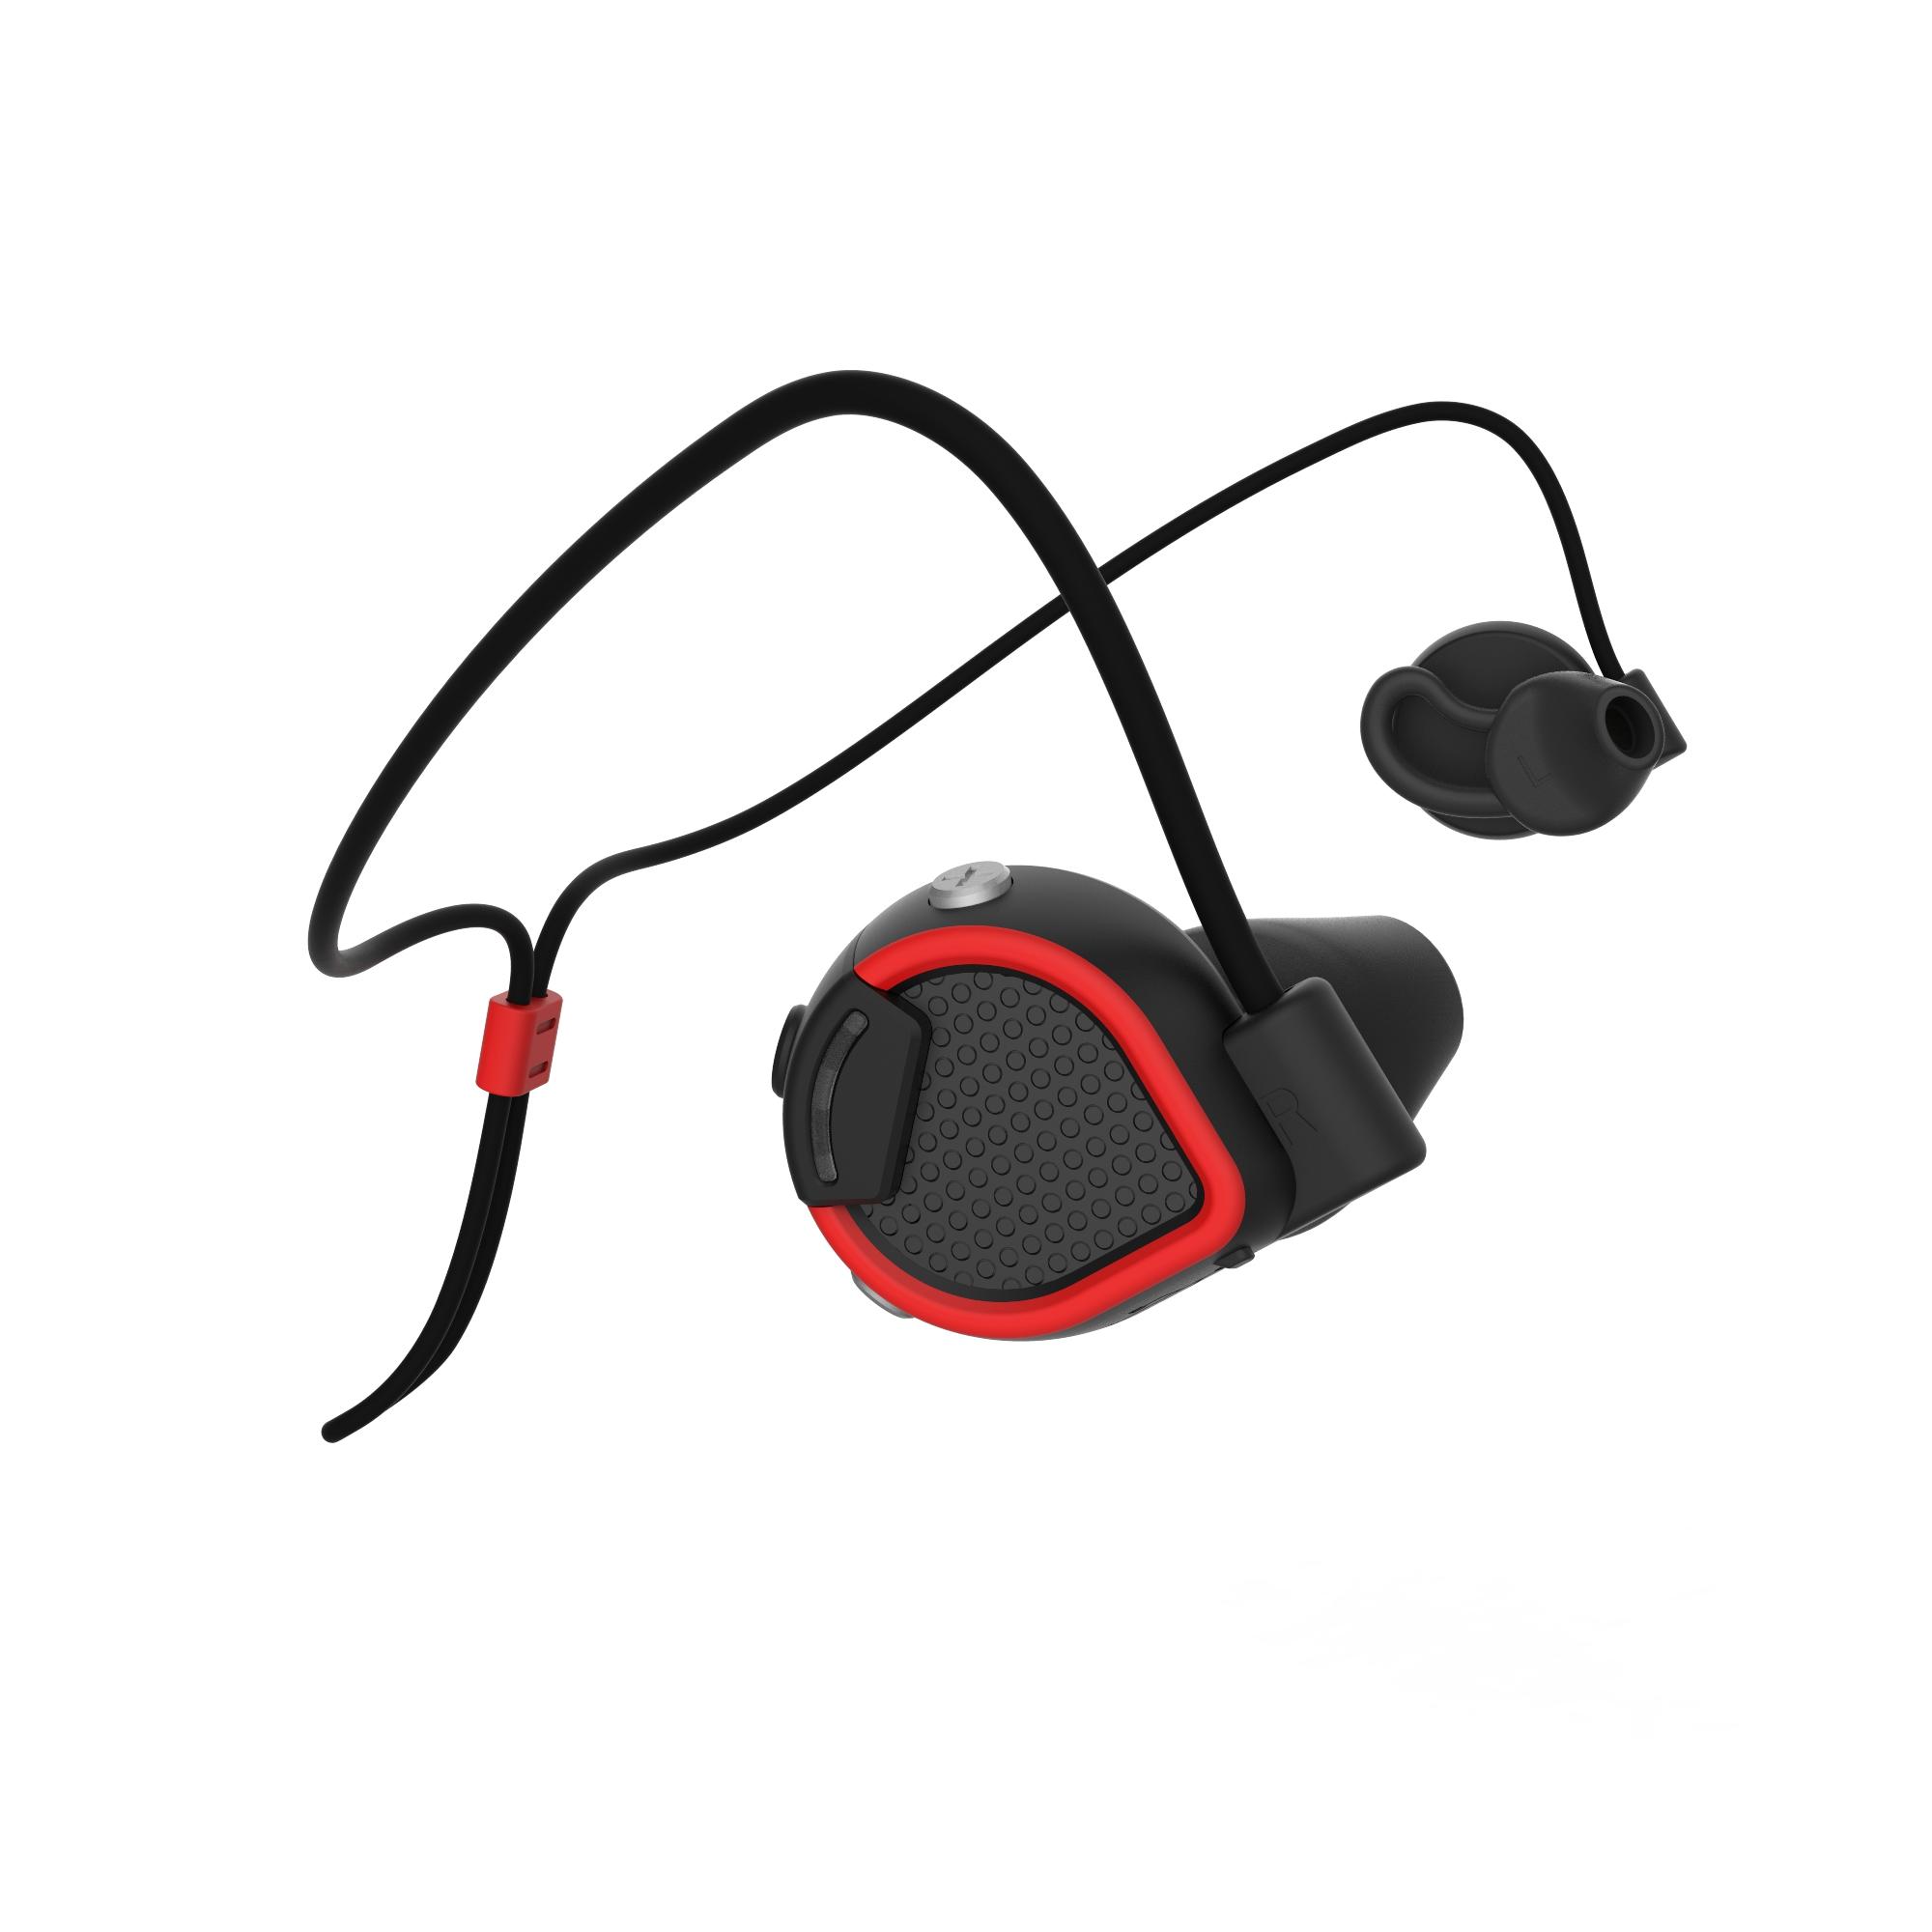 GEONAUTE ONEar Bluetooth Wireless Sport Earphones - Black Red